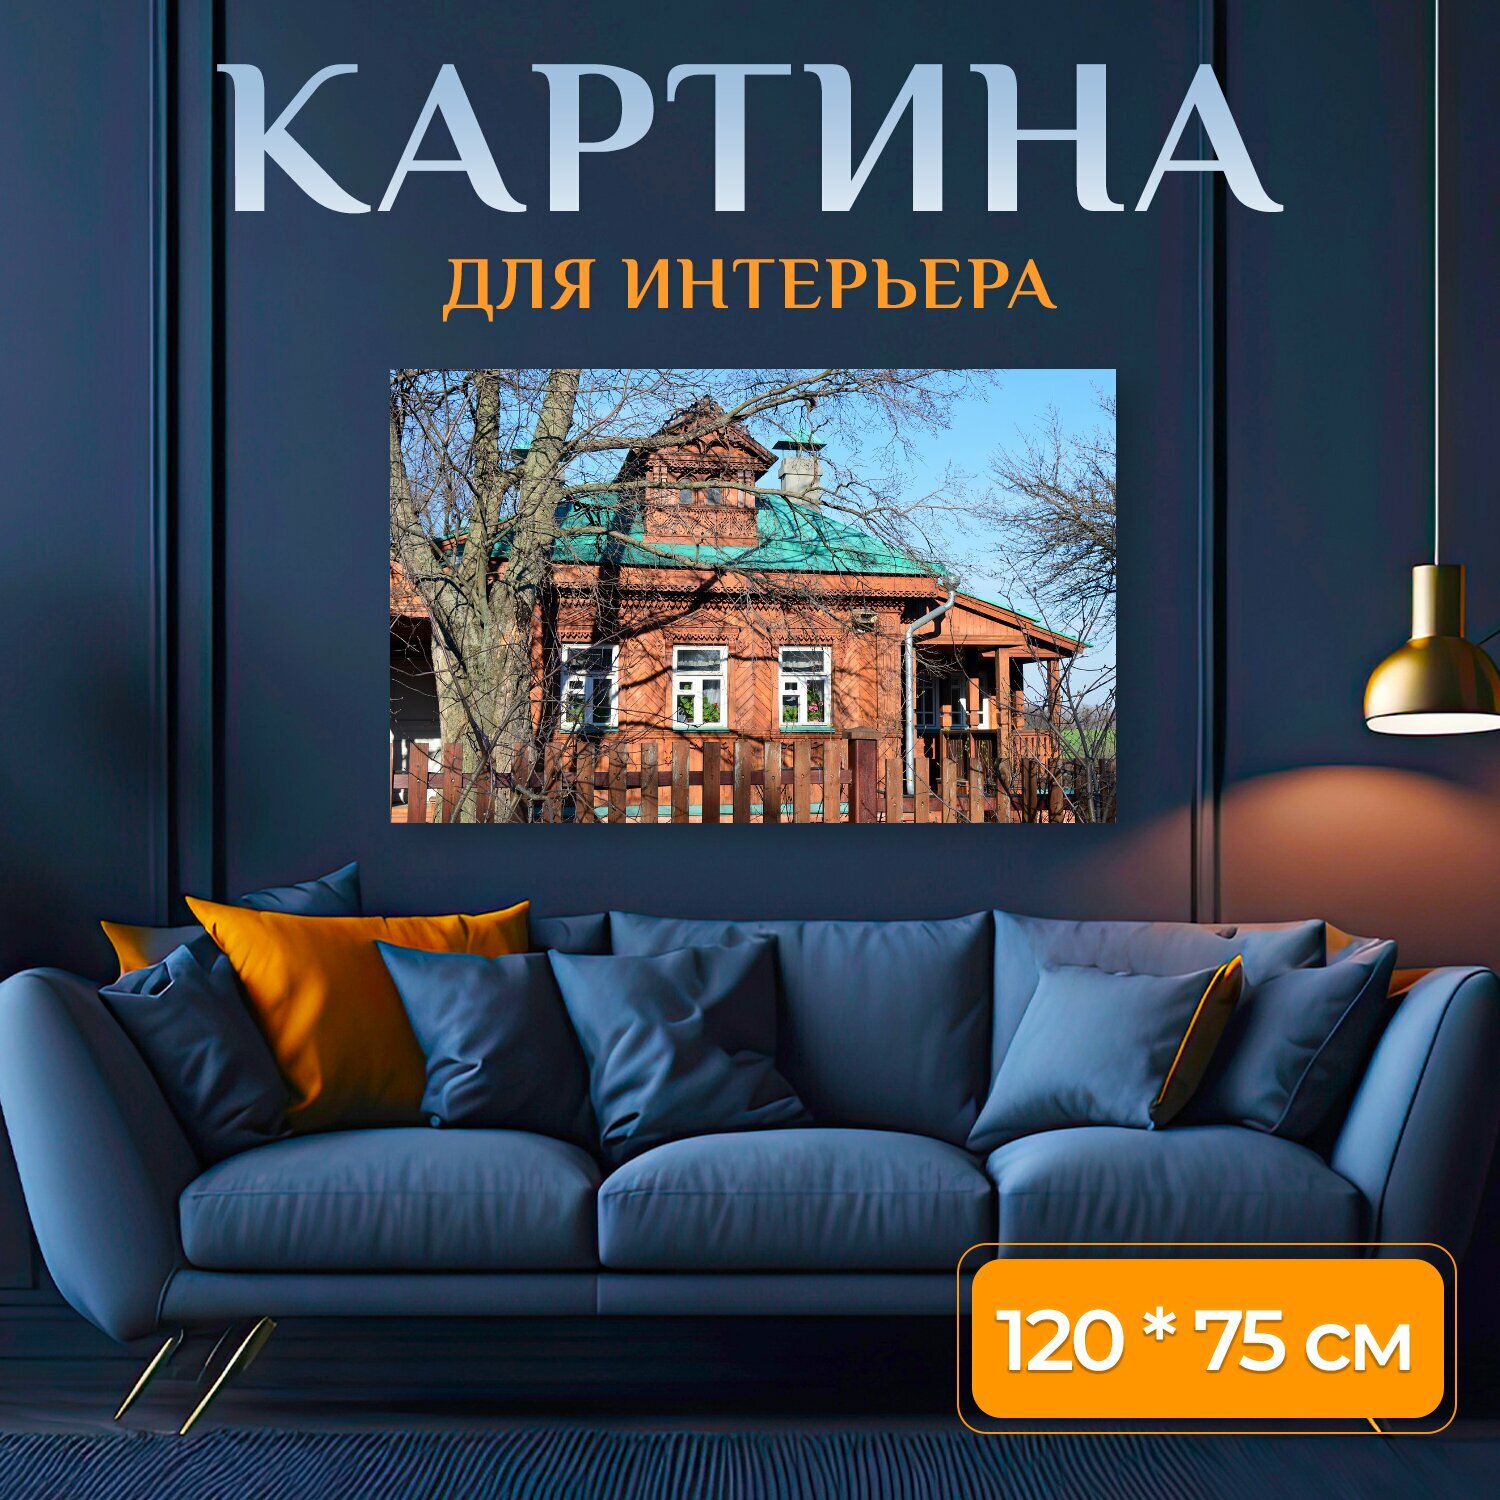 Картина на холсте "Изба, дом, исторический" на подрамнике 120х75 см. для интерьера